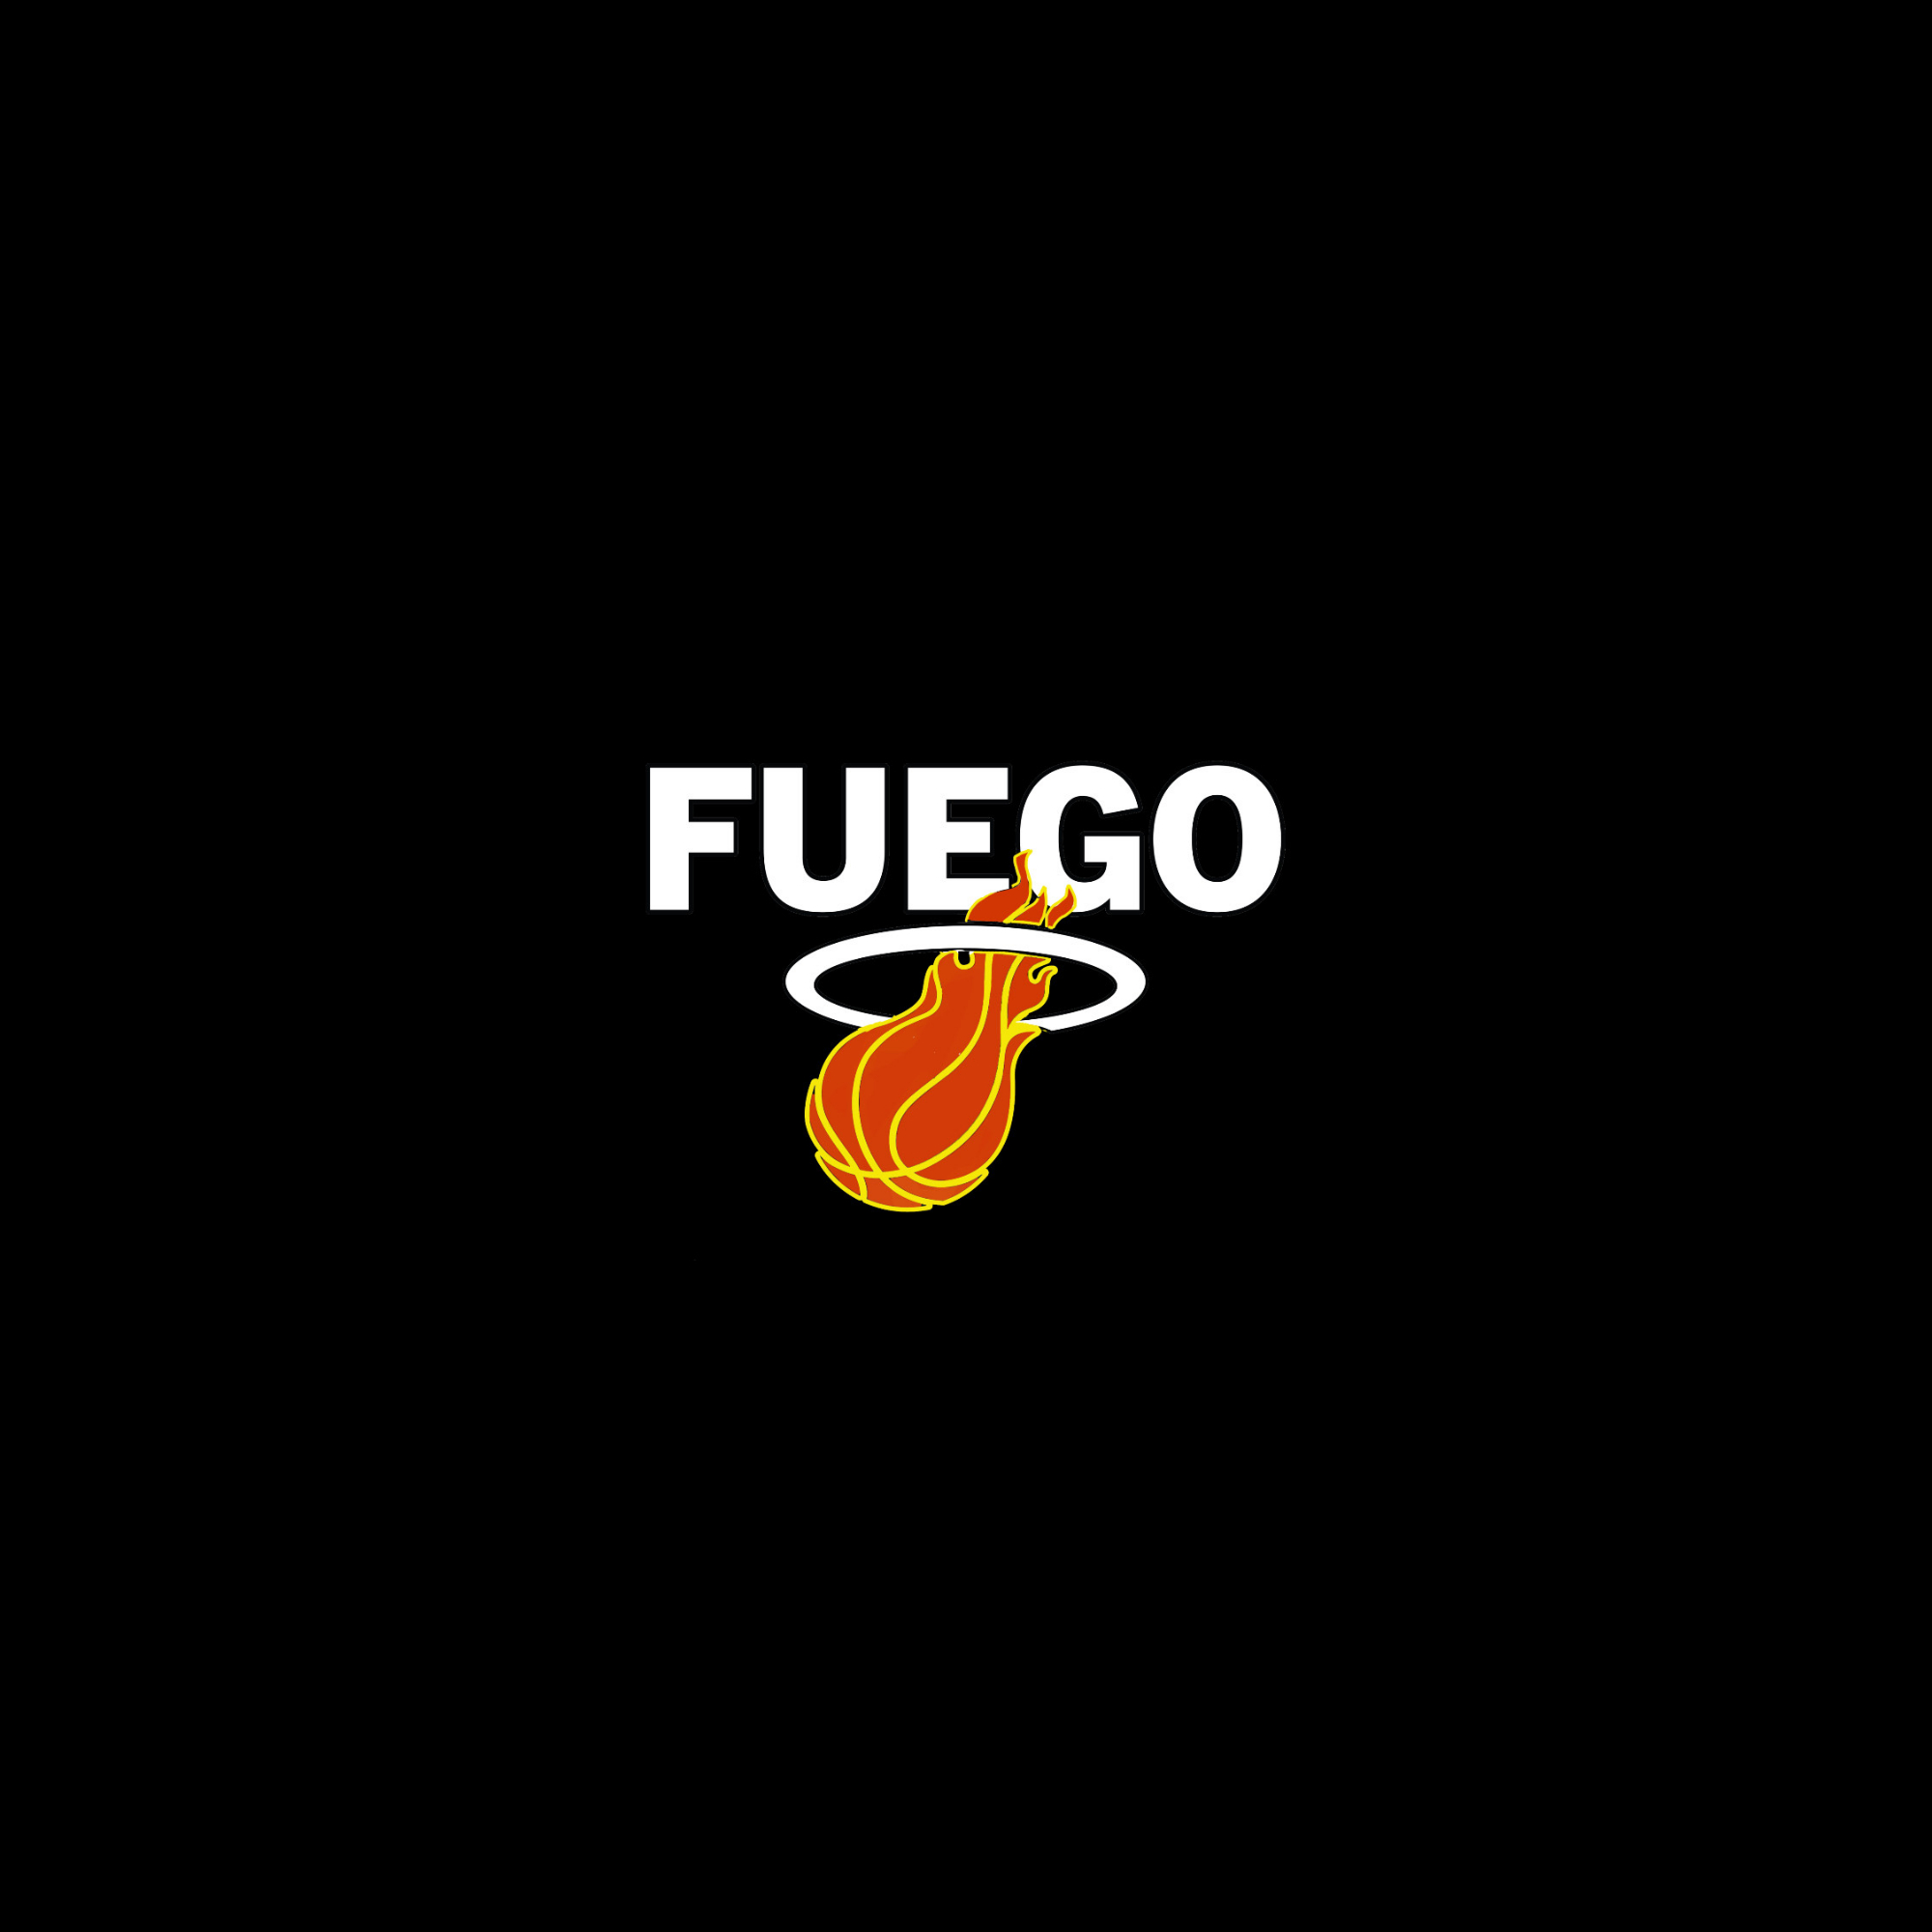 Organization logo for 206 Fuego